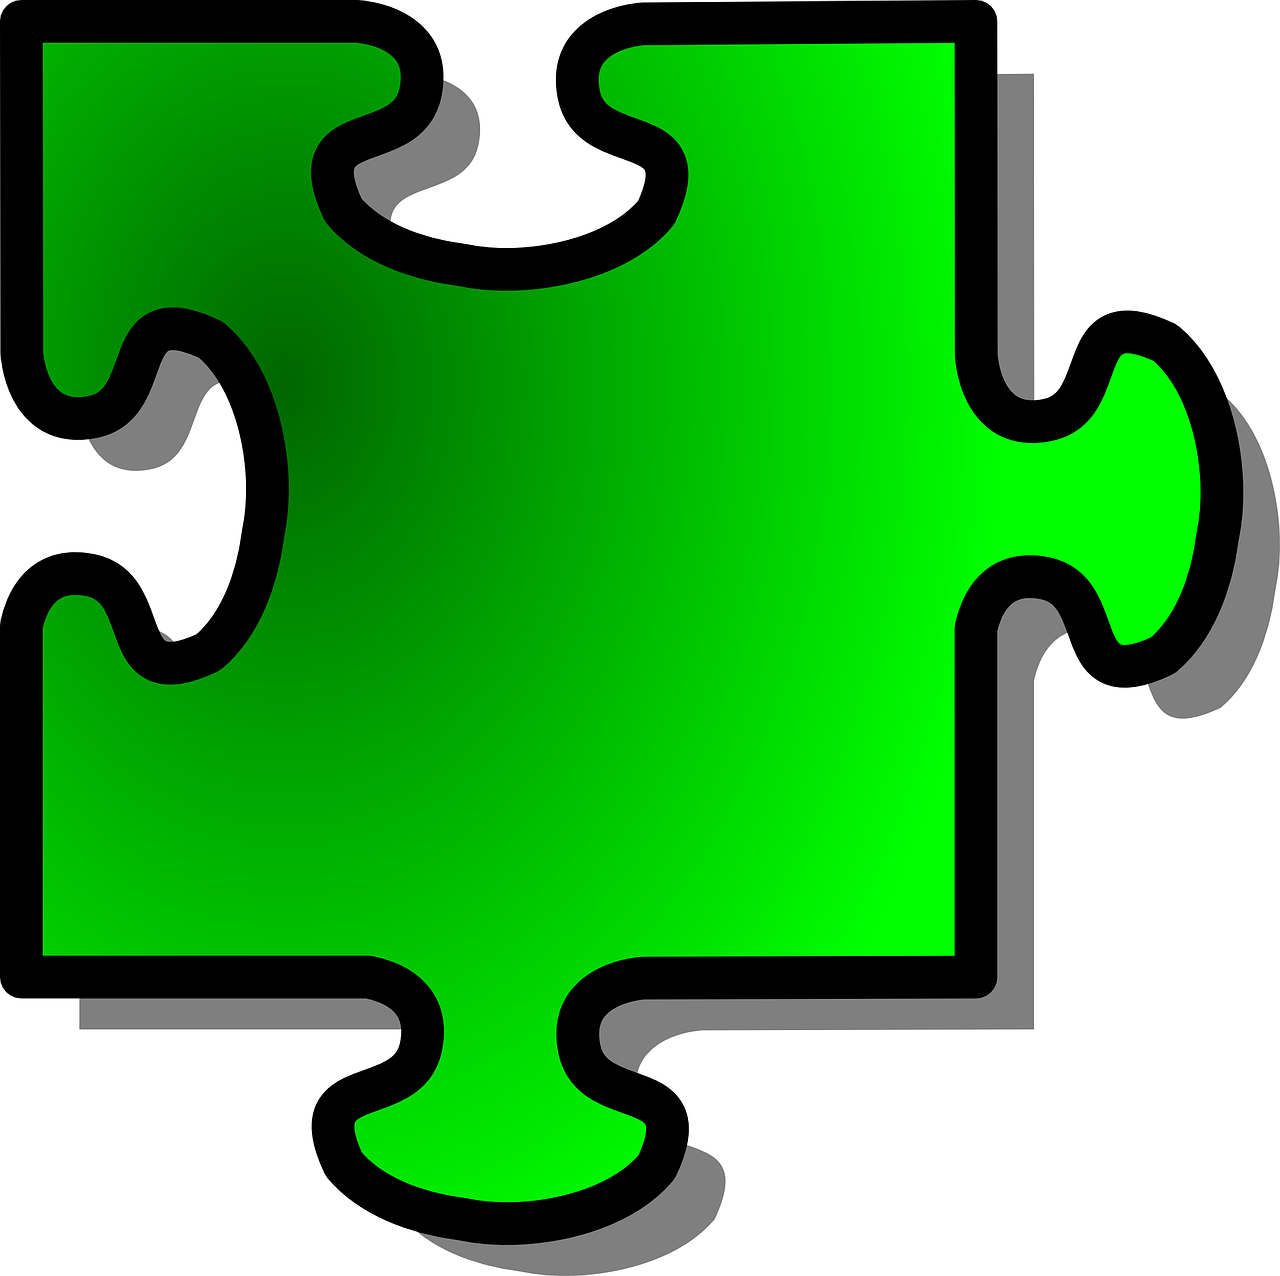 jigsaw puzzle piece free photo